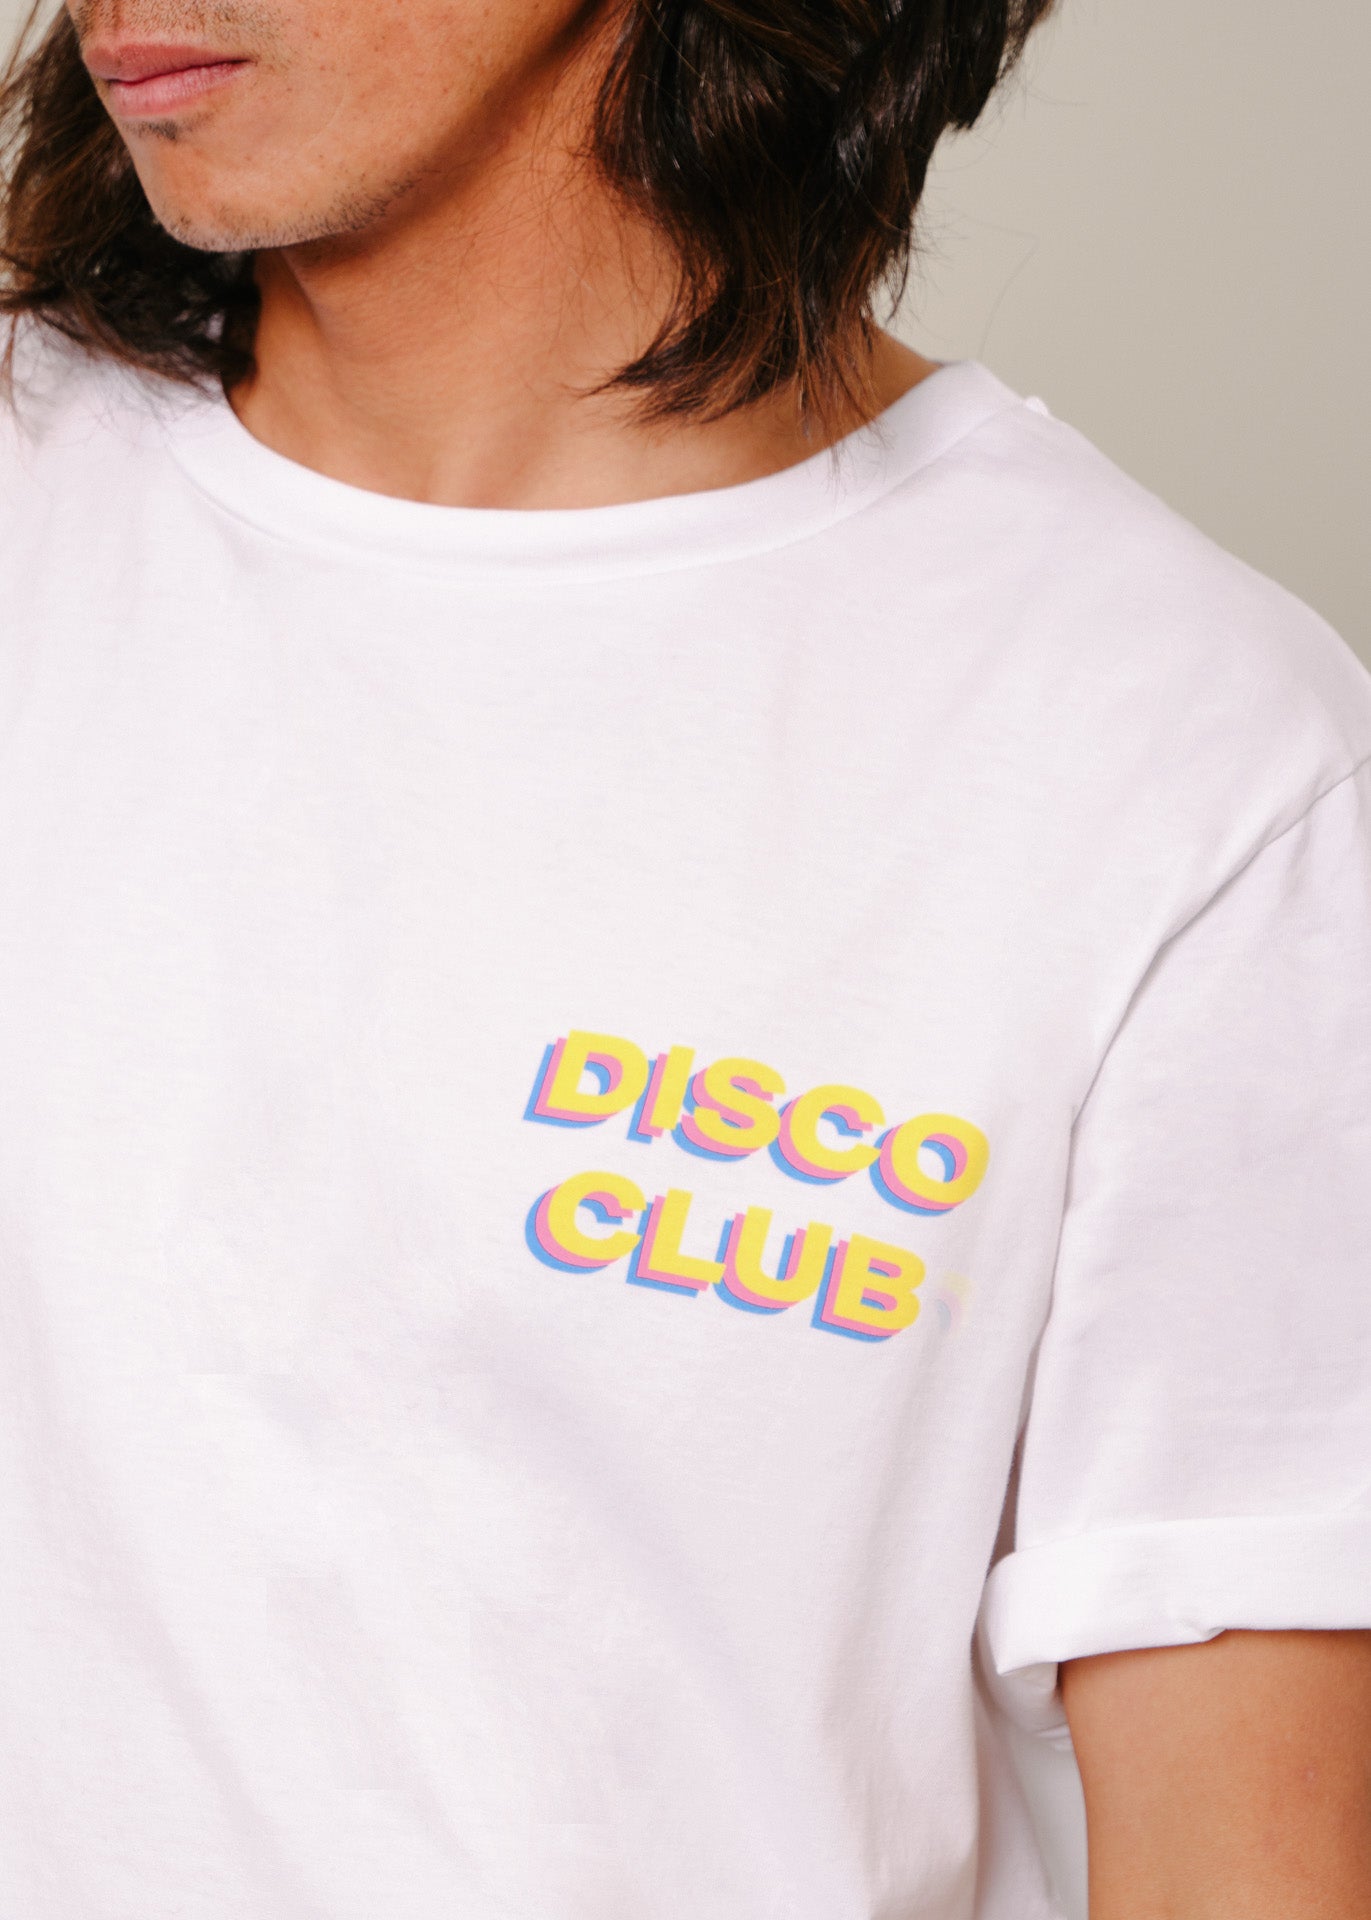 The Disco club t-shirt